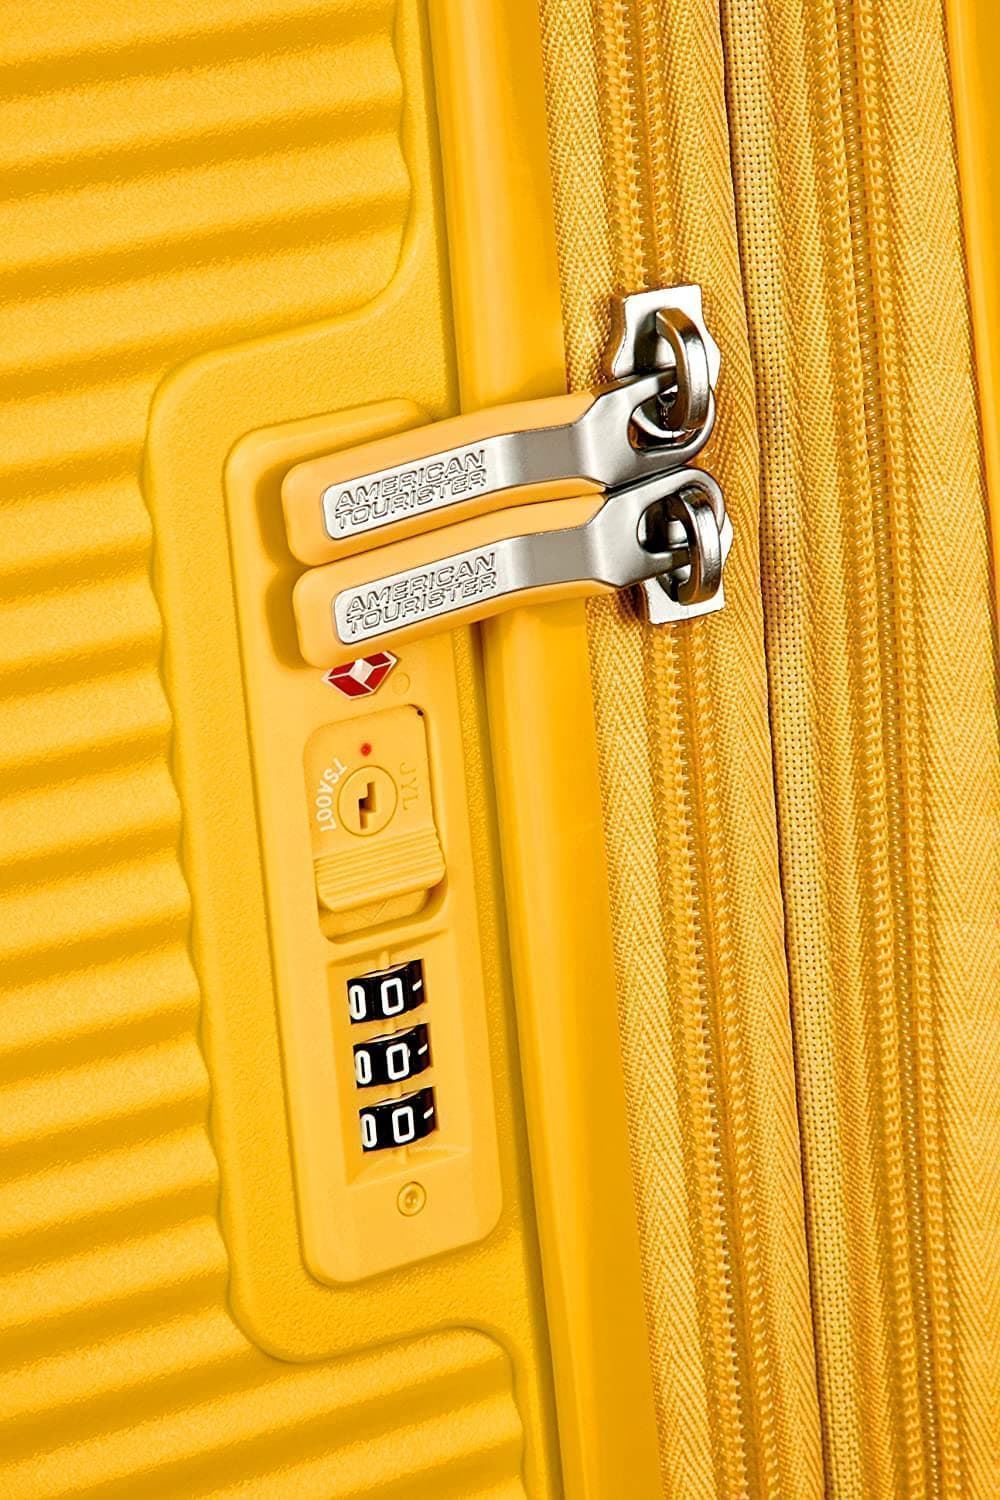 American Tourister Soundbox maleta cabina expandible Amarillo 3 años de garantia - Imagen 4